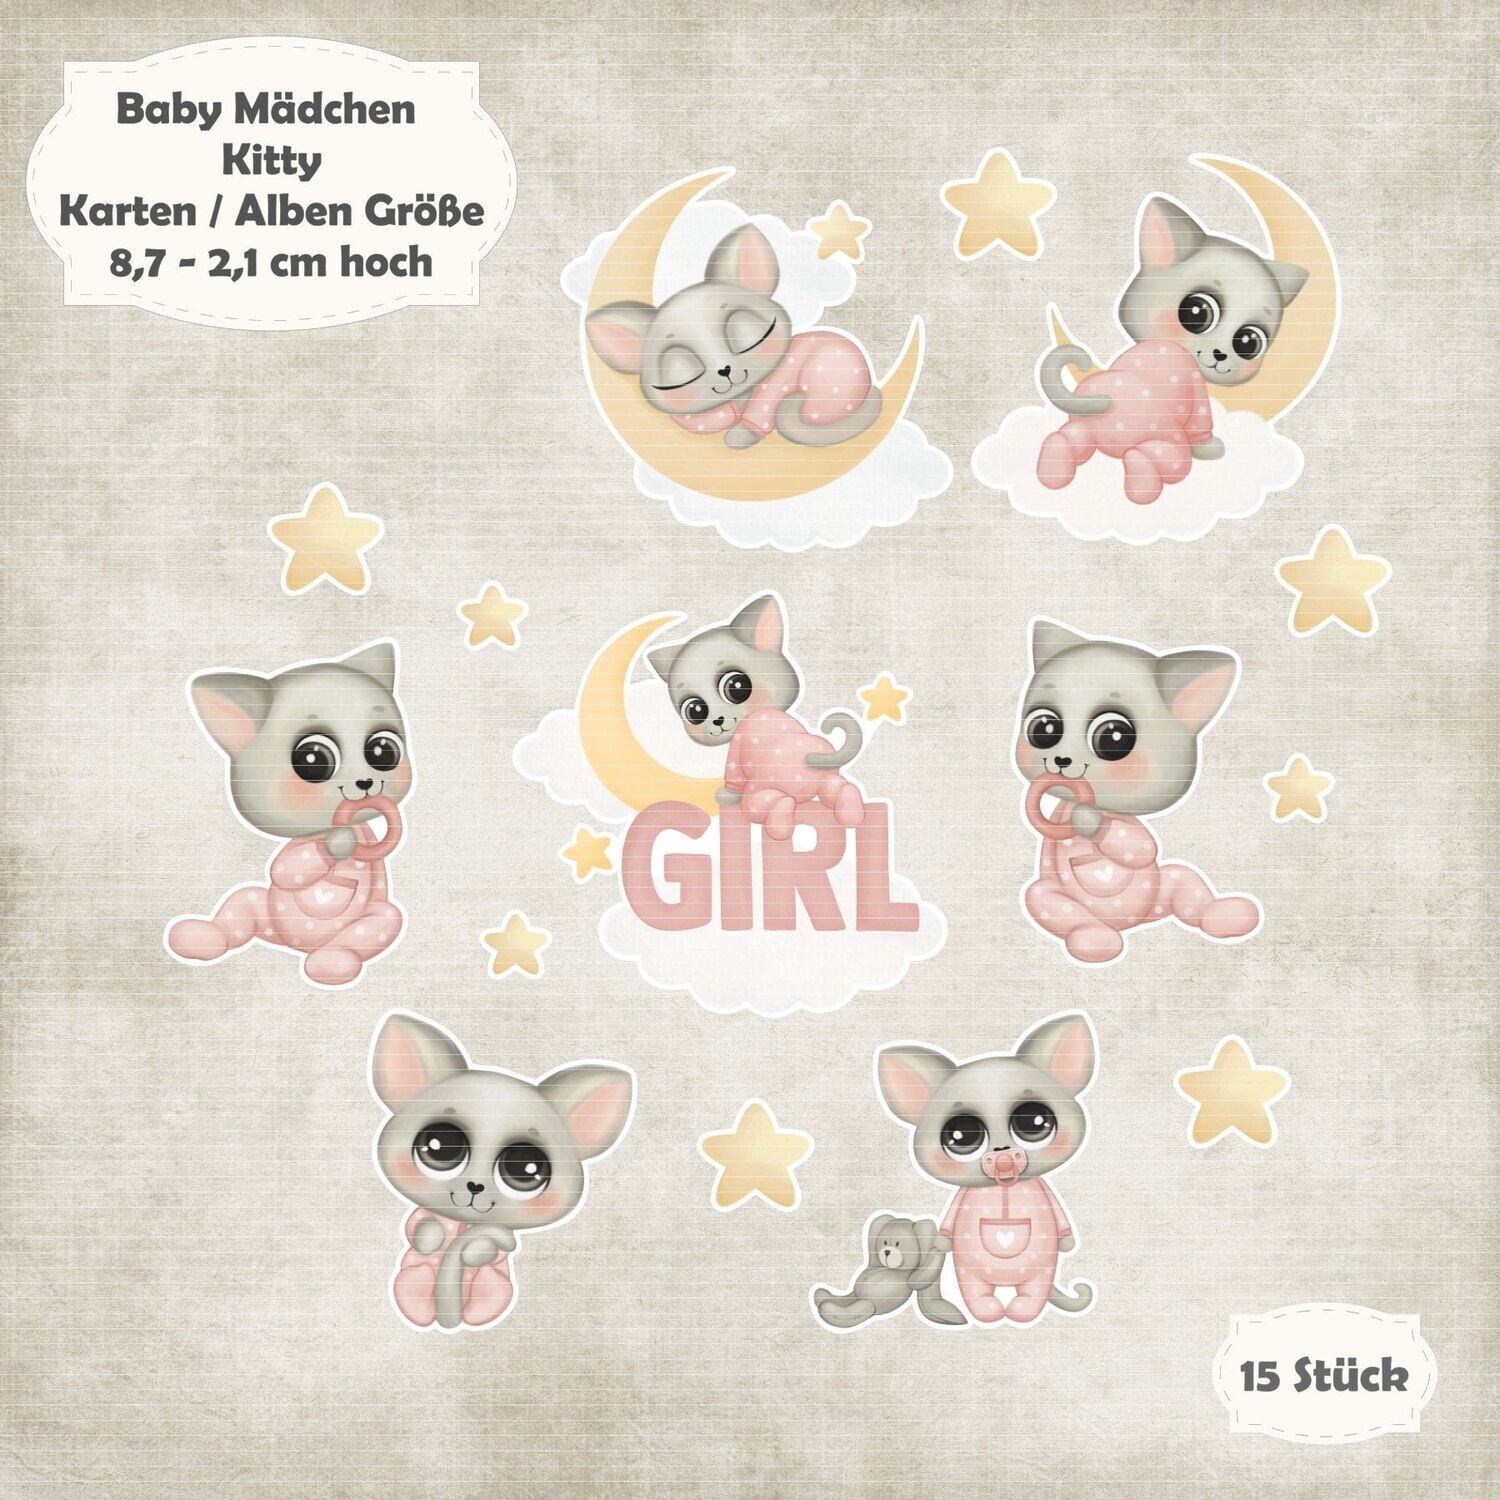 Kitty - Baby - Alben / Kartengröße - 15 Stanzteile - Die Cuts - weiß glatt*